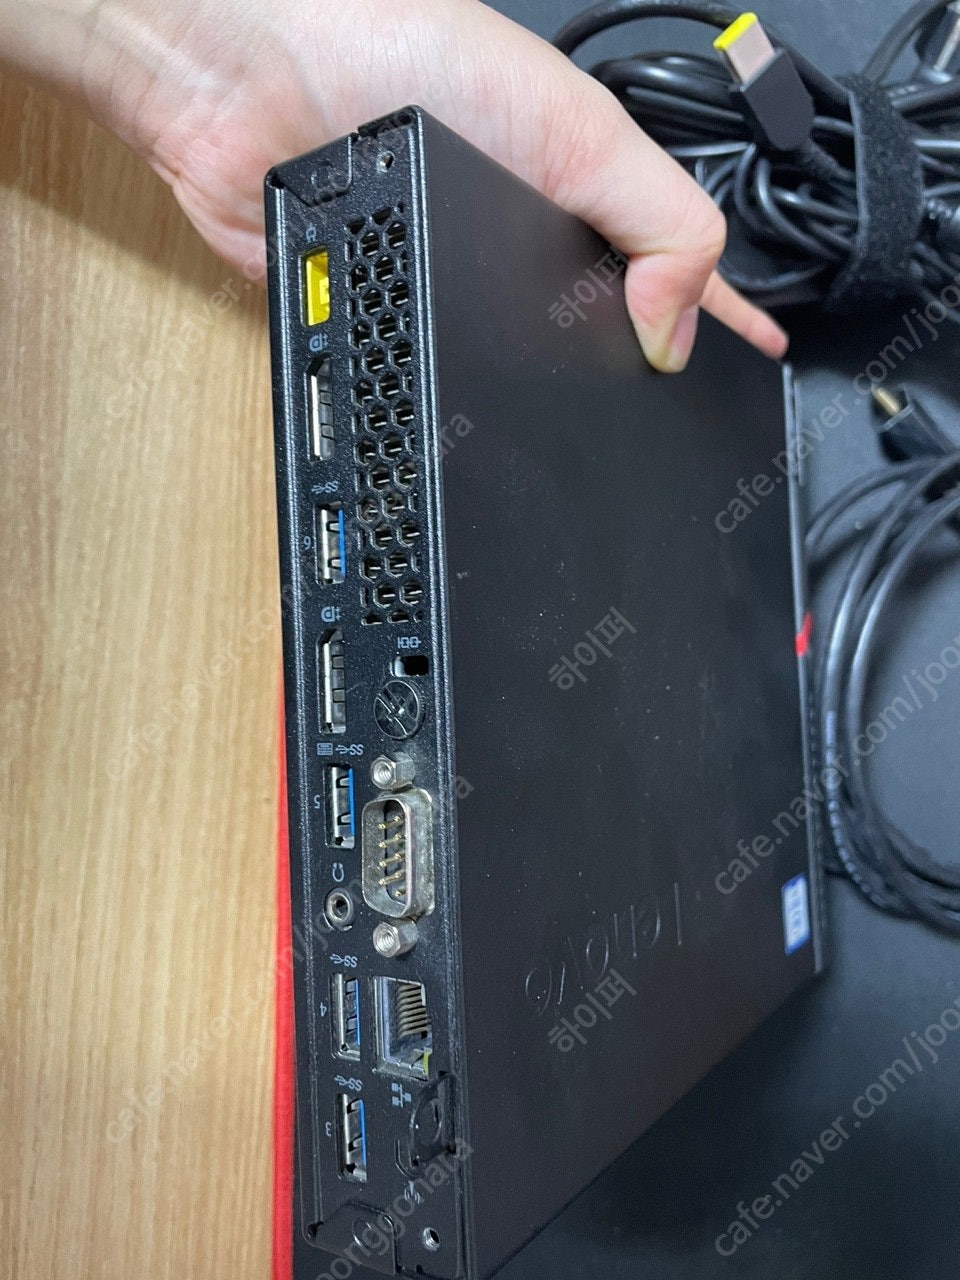 [M700] i7 레노버 미니 PC 팝니다.